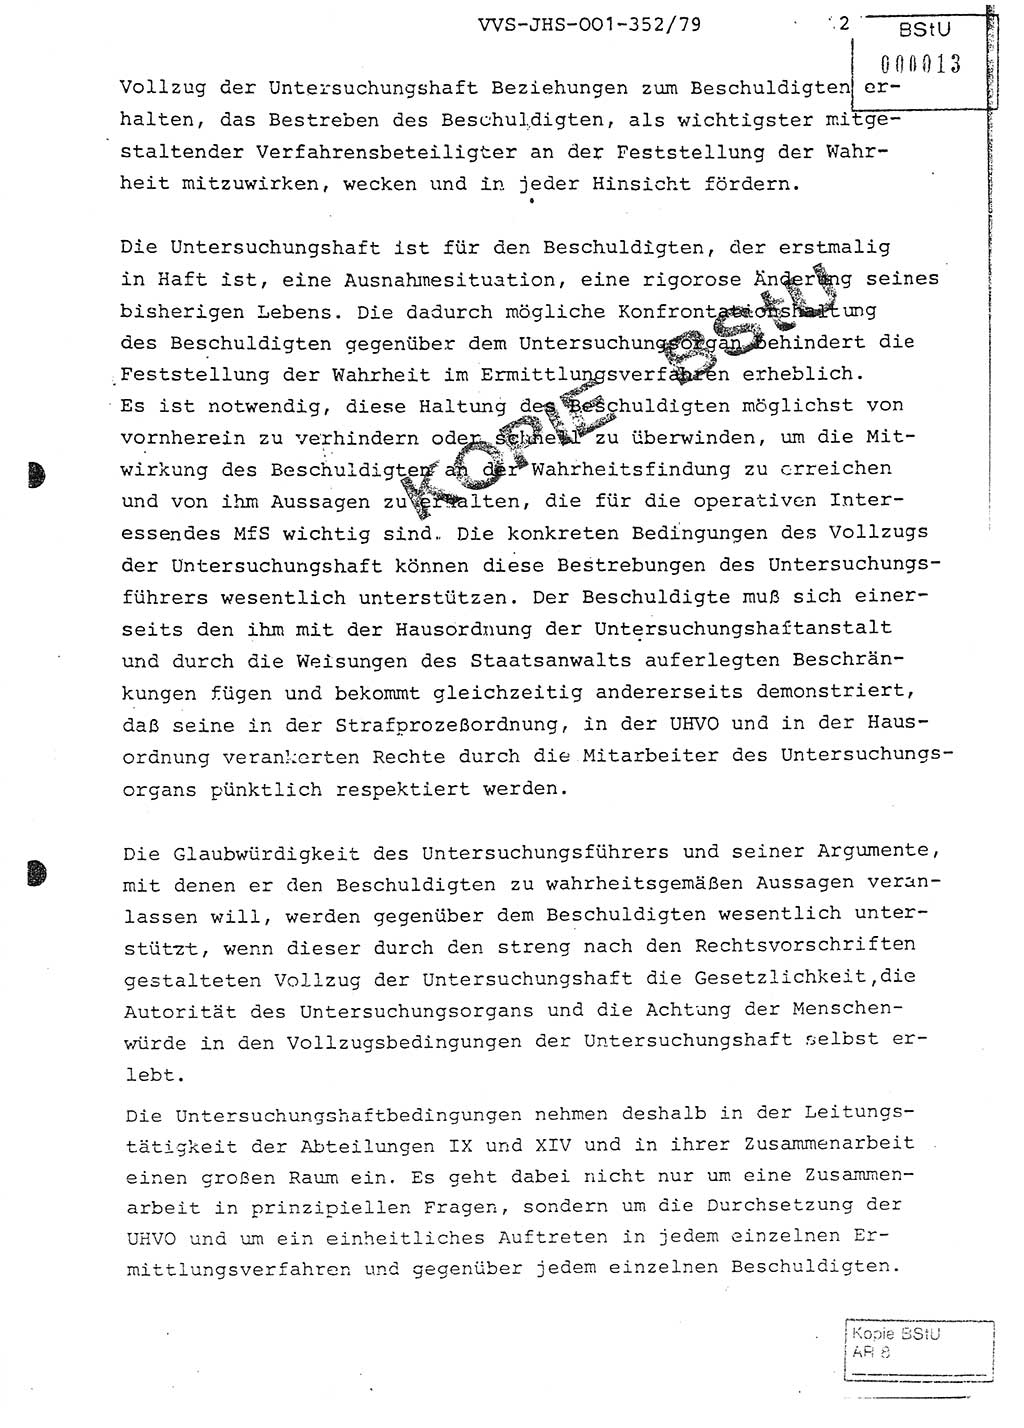 Diplomarbeit Hauptmann Peter Wittum (BV Bln. Abt. HA Ⅸ), Ministerium für Staatssicherheit (MfS) [Deutsche Demokratische Republik (DDR)], Juristische Hochschule (JHS), Vertrauliche Verschlußsache (VVS) o001-352/79, Potsdam 1979, Seite 12 (Dipl.-Arb. MfS DDR JHS VVS o001-352/79 1979, S. 12)